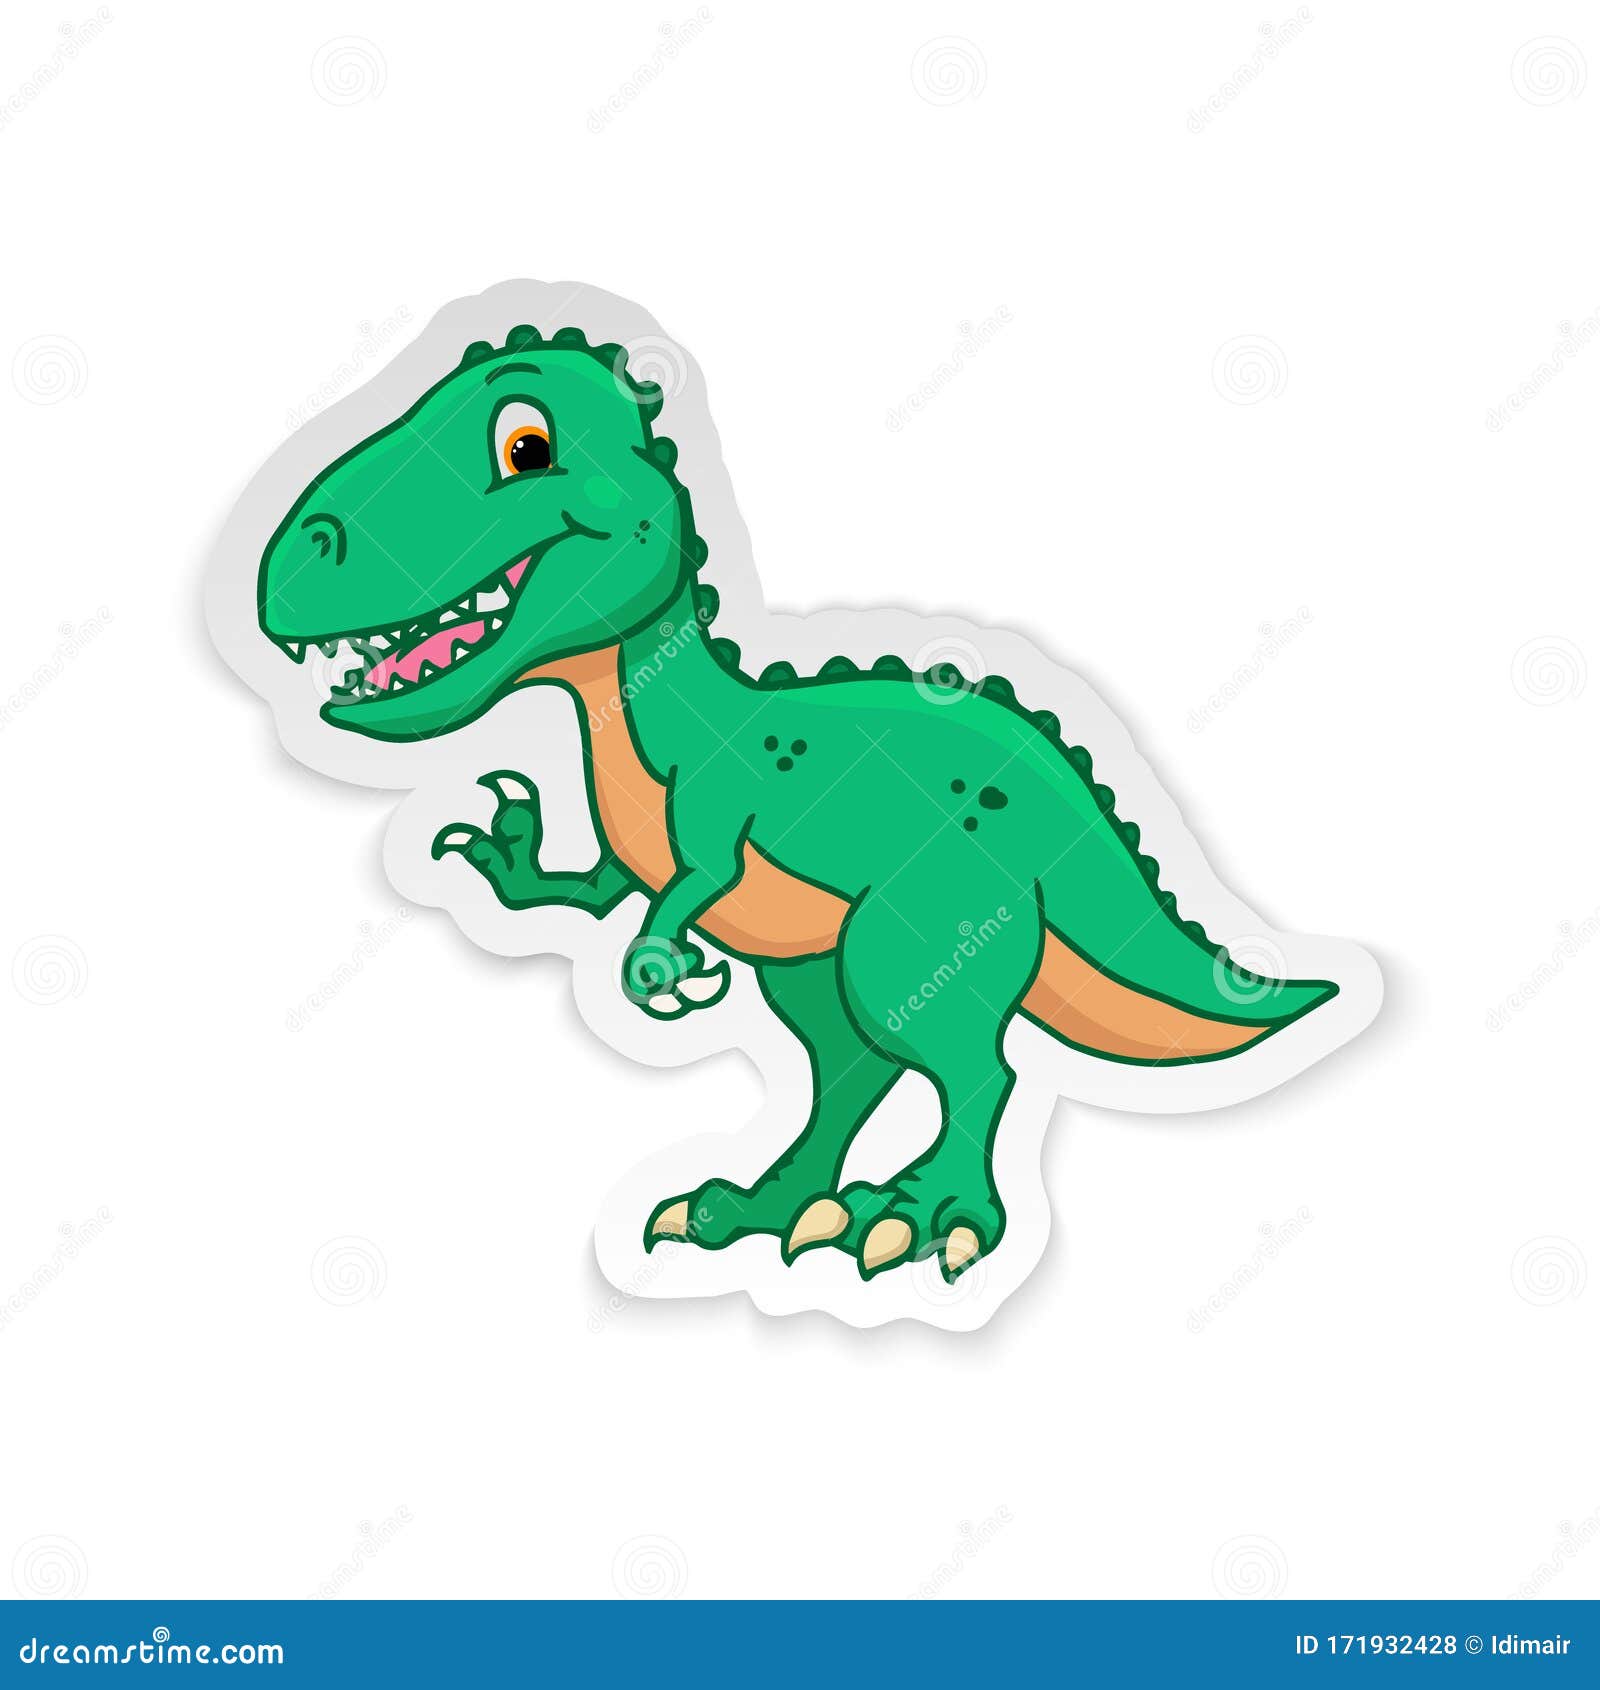 Como desenhar um dinossauro T-Rex - Novidades - Fofossauros